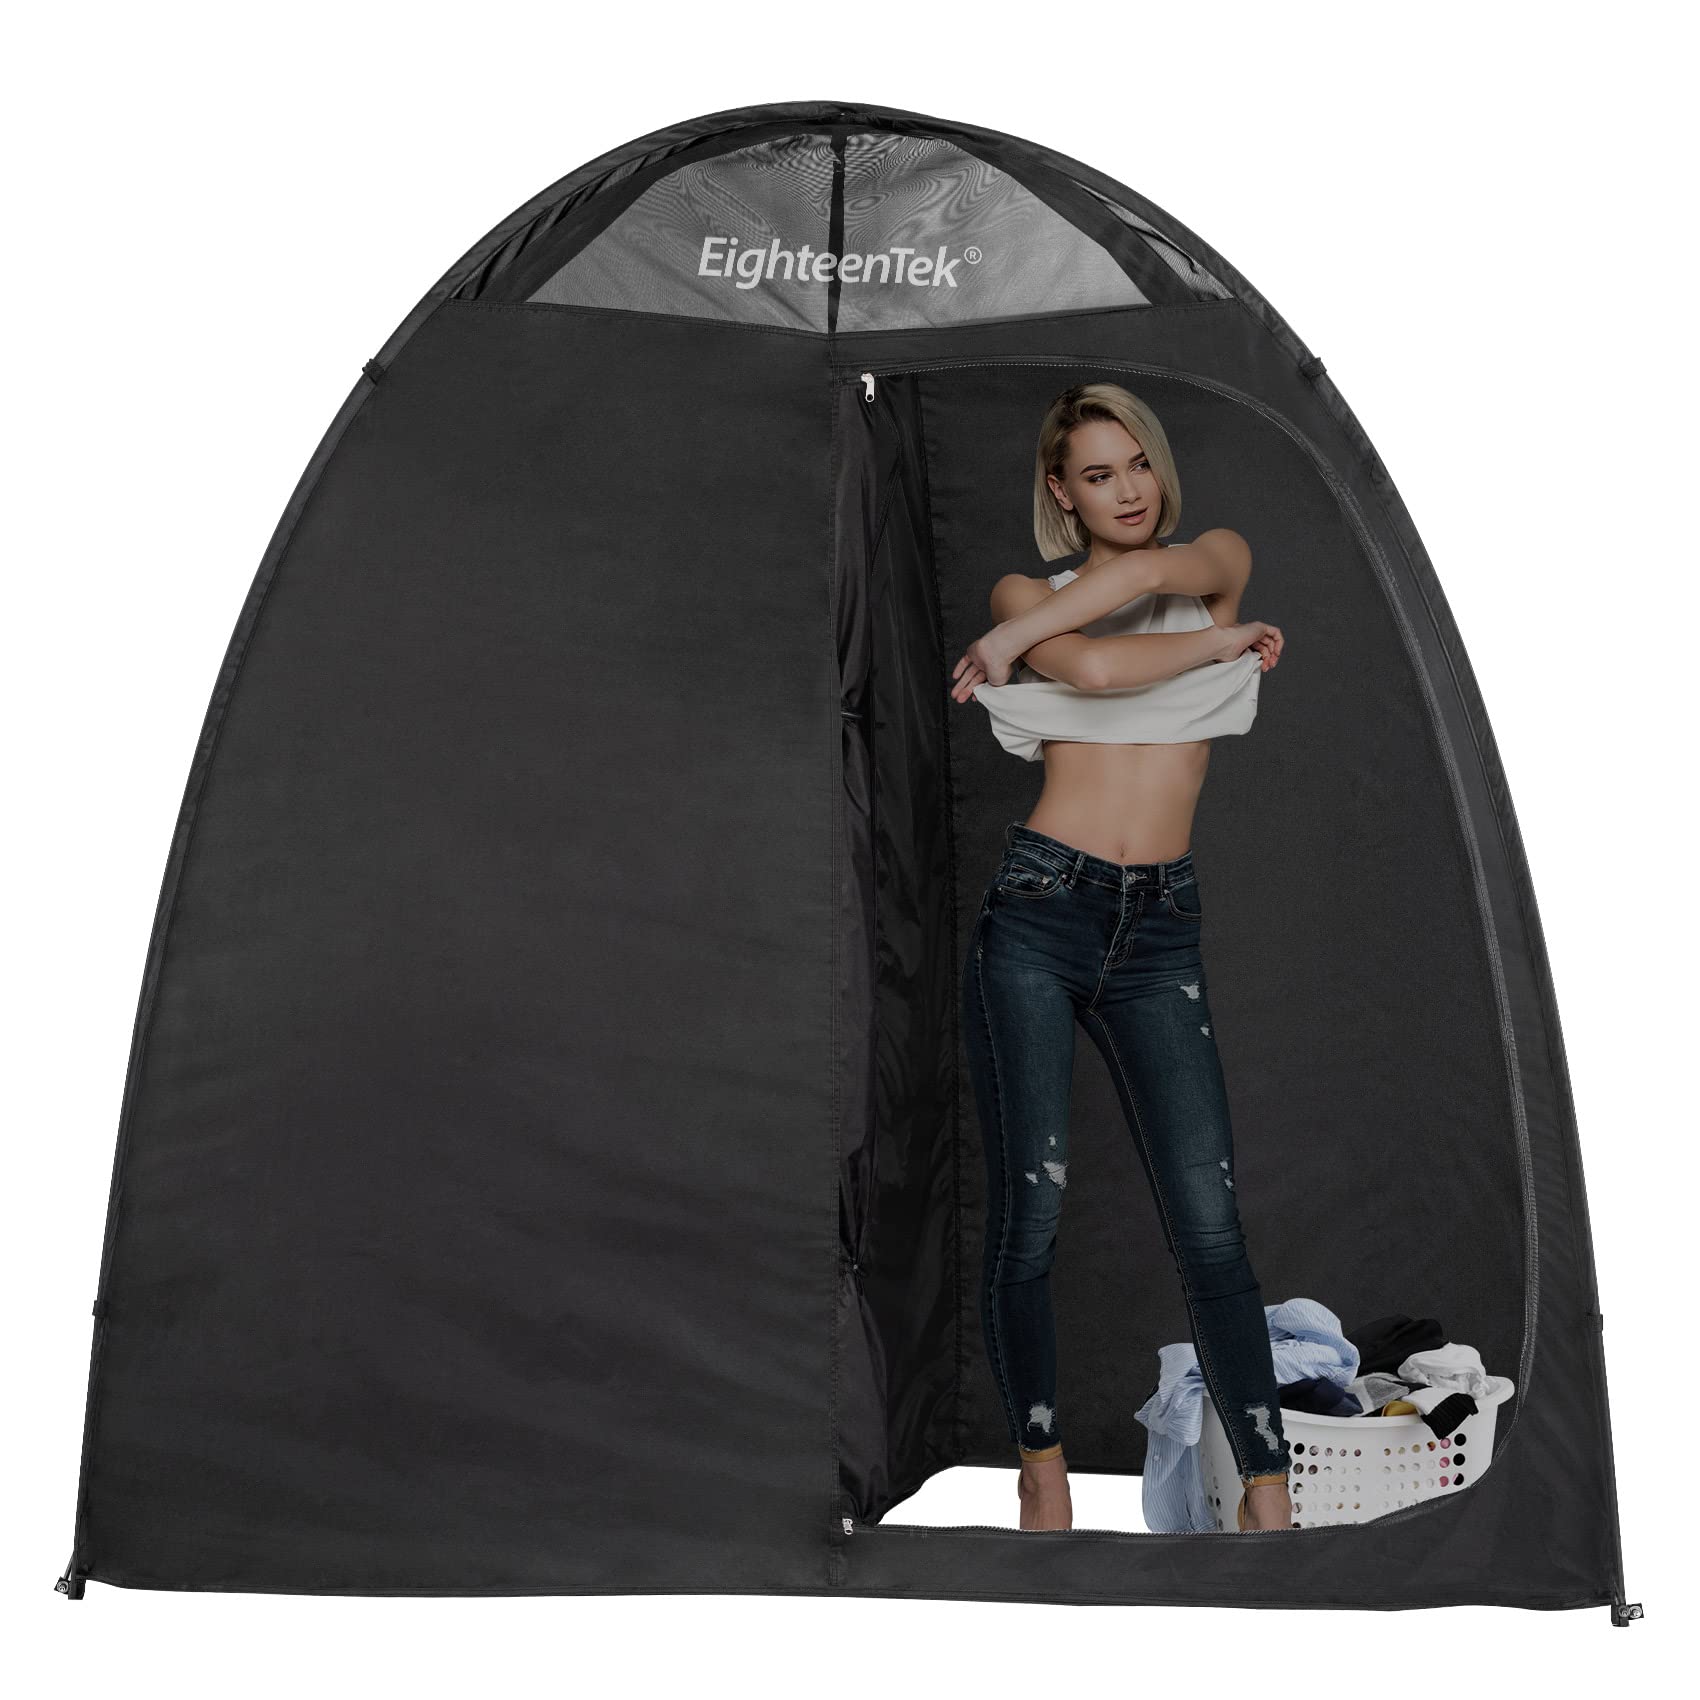 送料無料EighteenTek Pop Up Shower Tent Changing Room with Two Rooms - Portable Privacy Dressing Shelter for Outdoor Campi